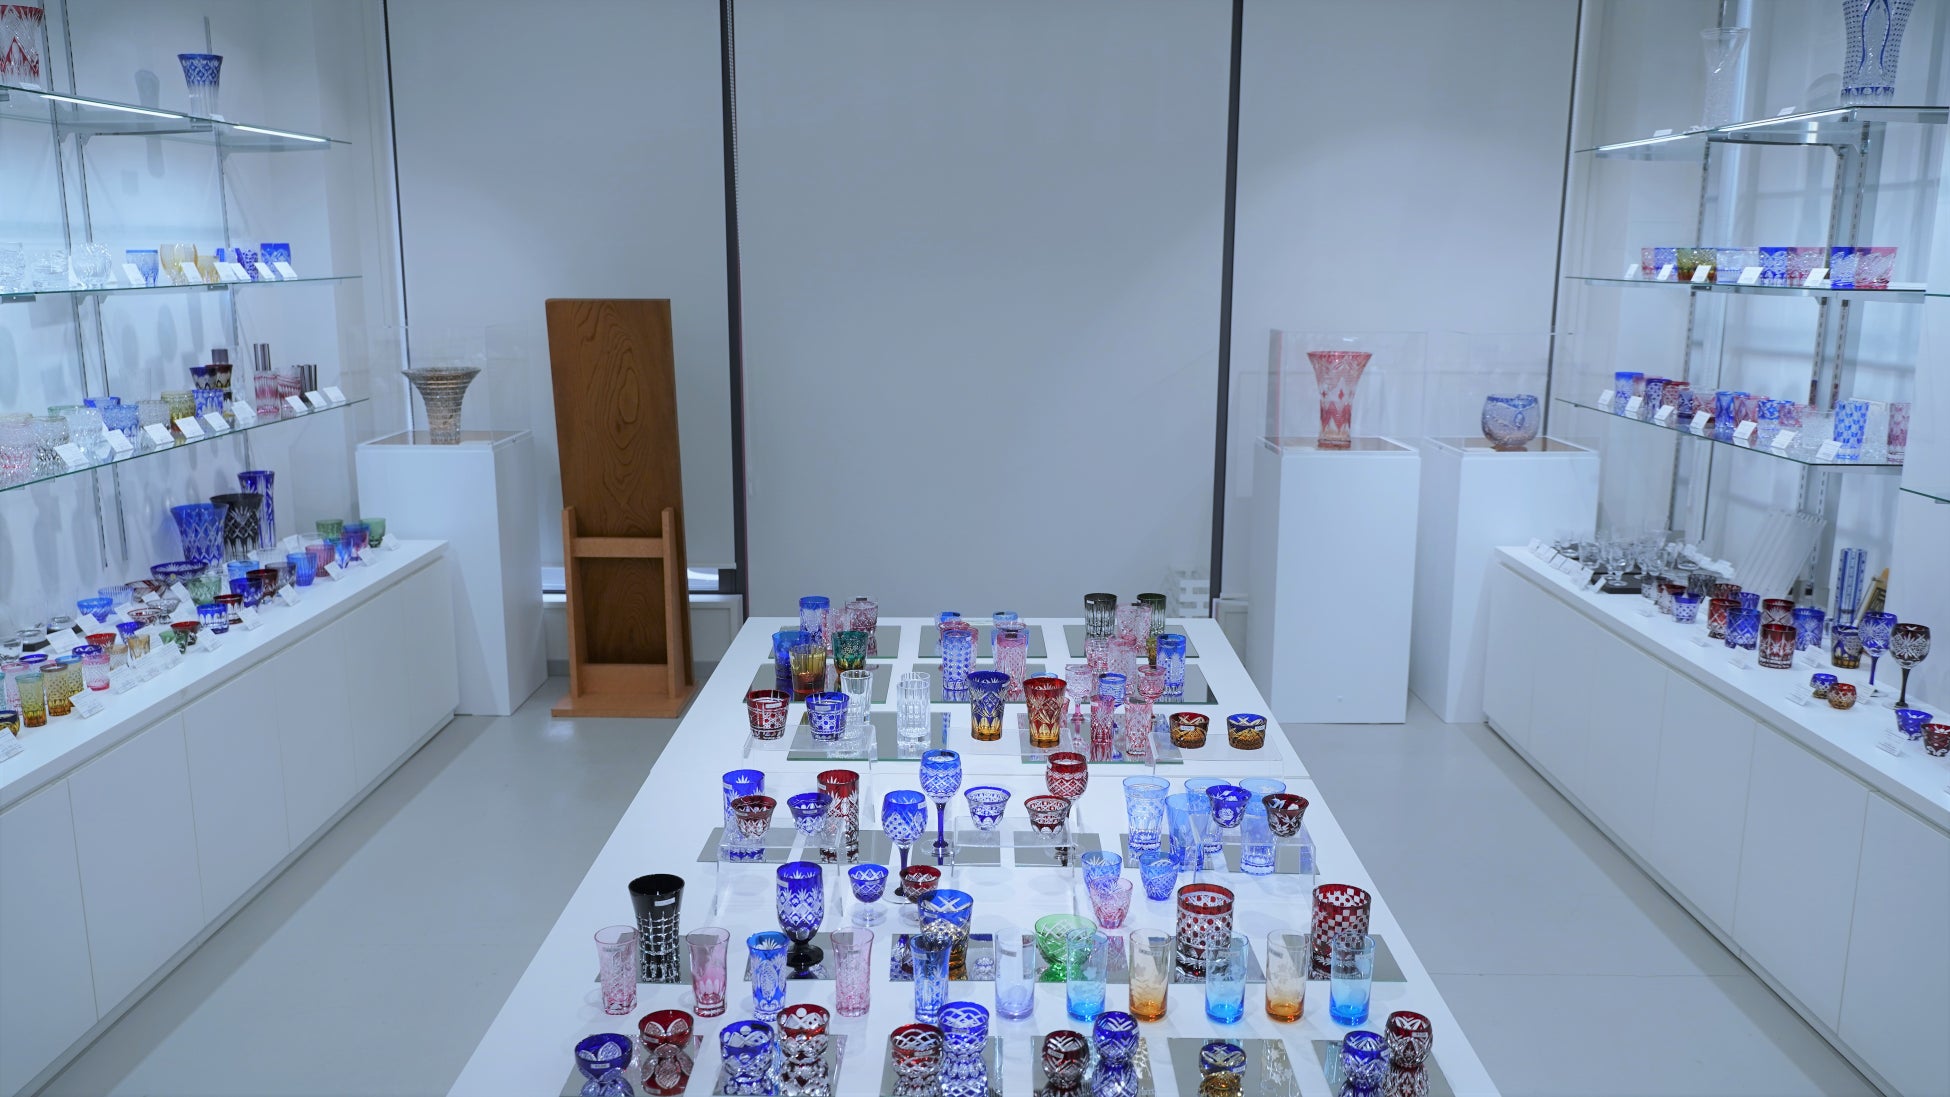 江戸切子ショールーム　新作展受賞作品展示のおしらせ　最高賞受賞を含む4作品を12月まで